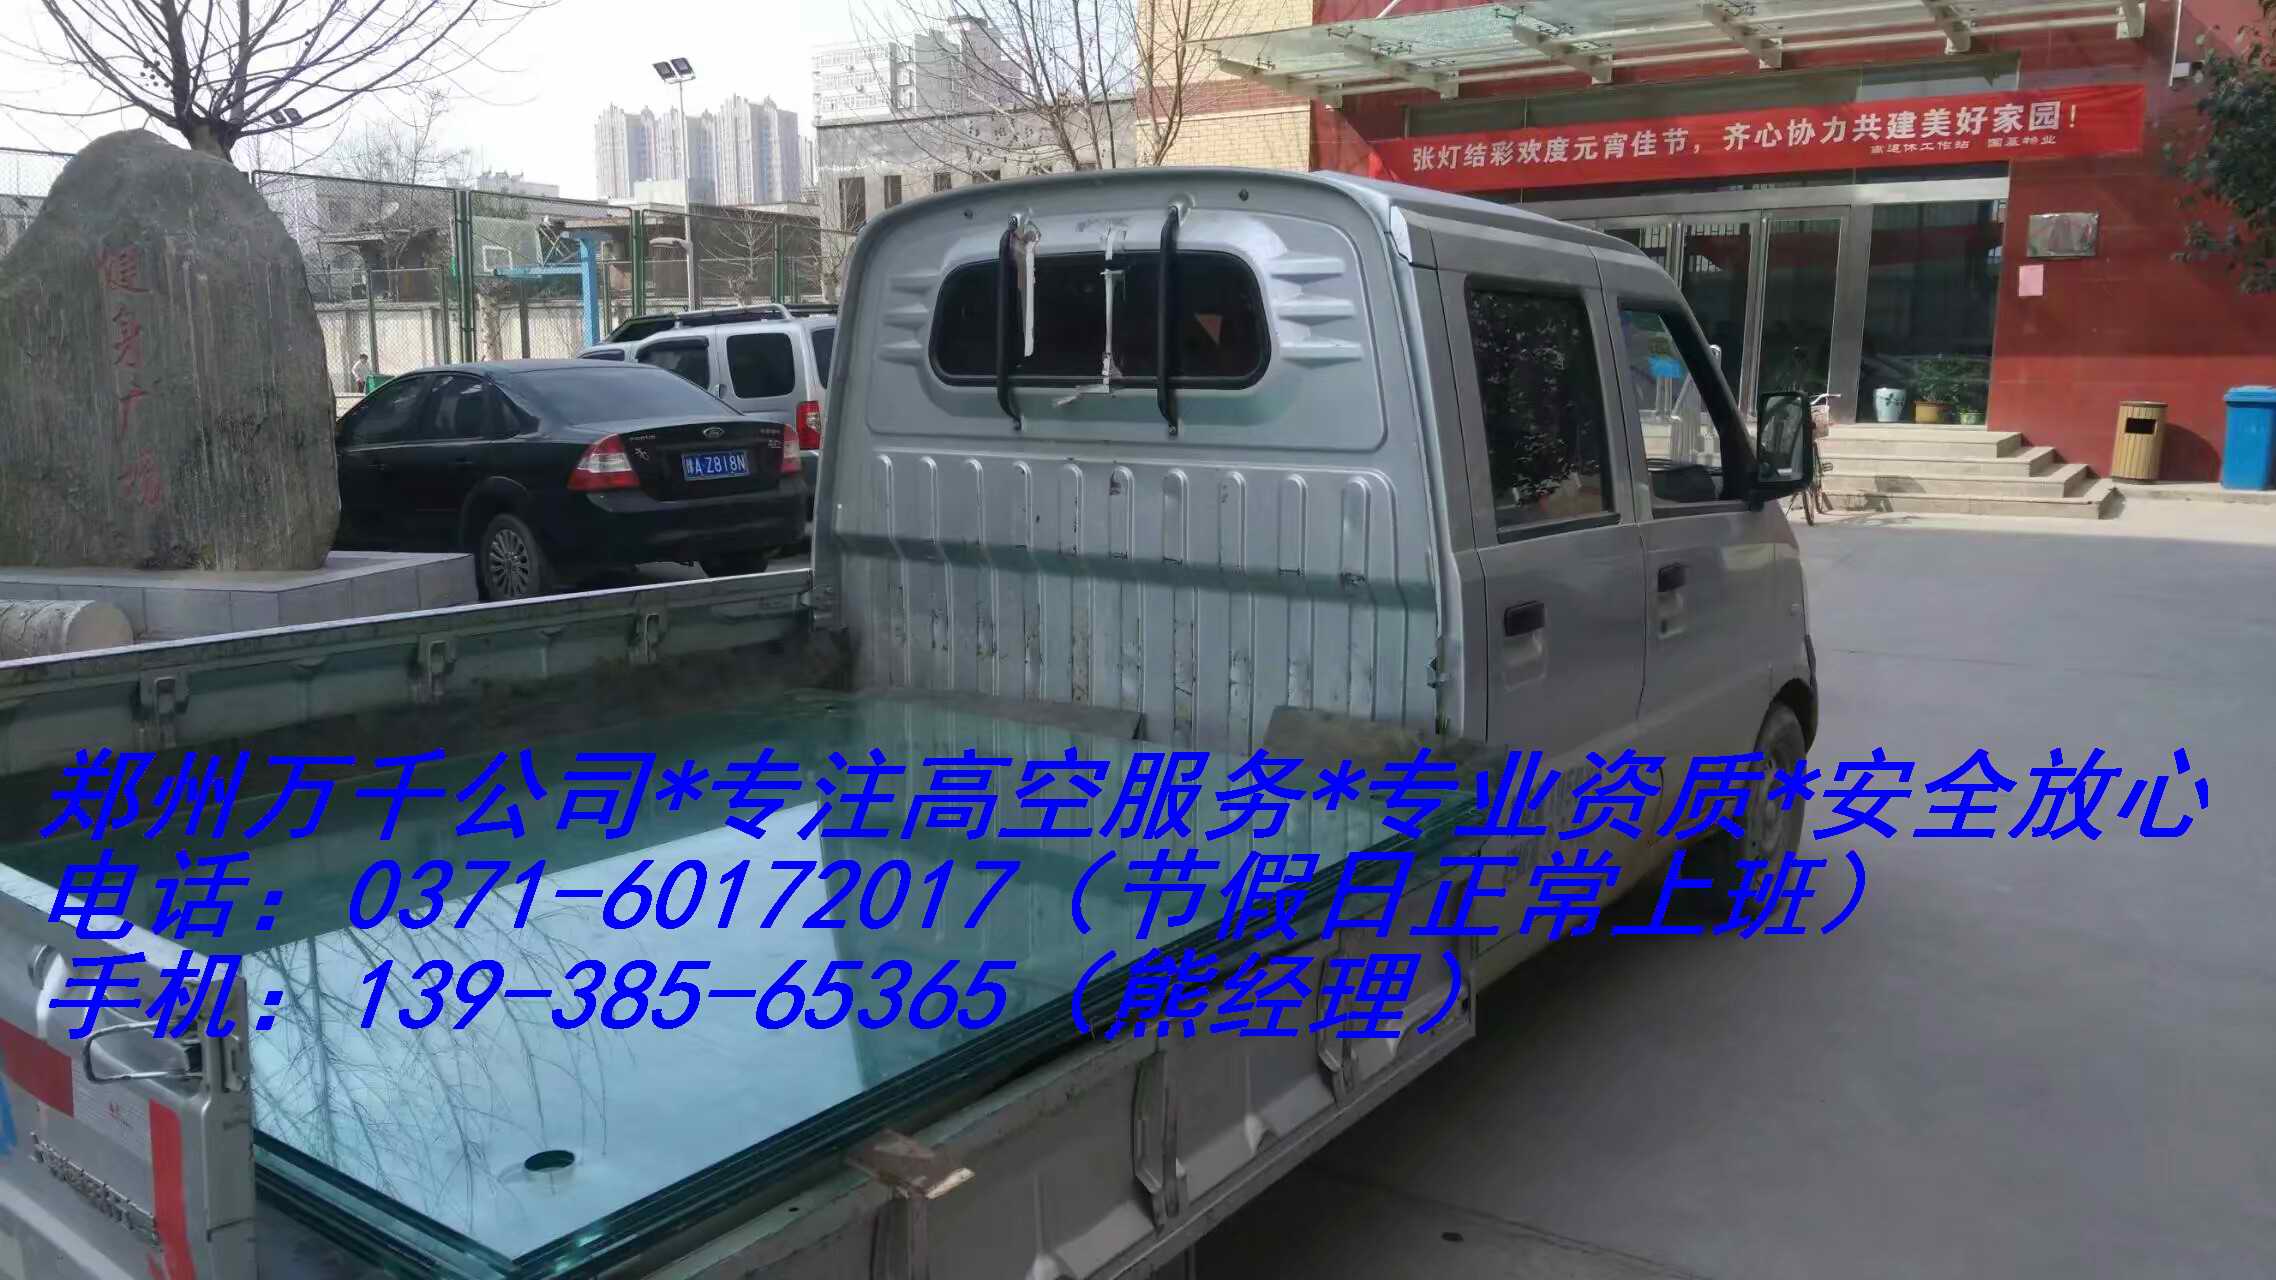 郑州室内注浆防水施工工程公司咨询服务电话号码13938565365